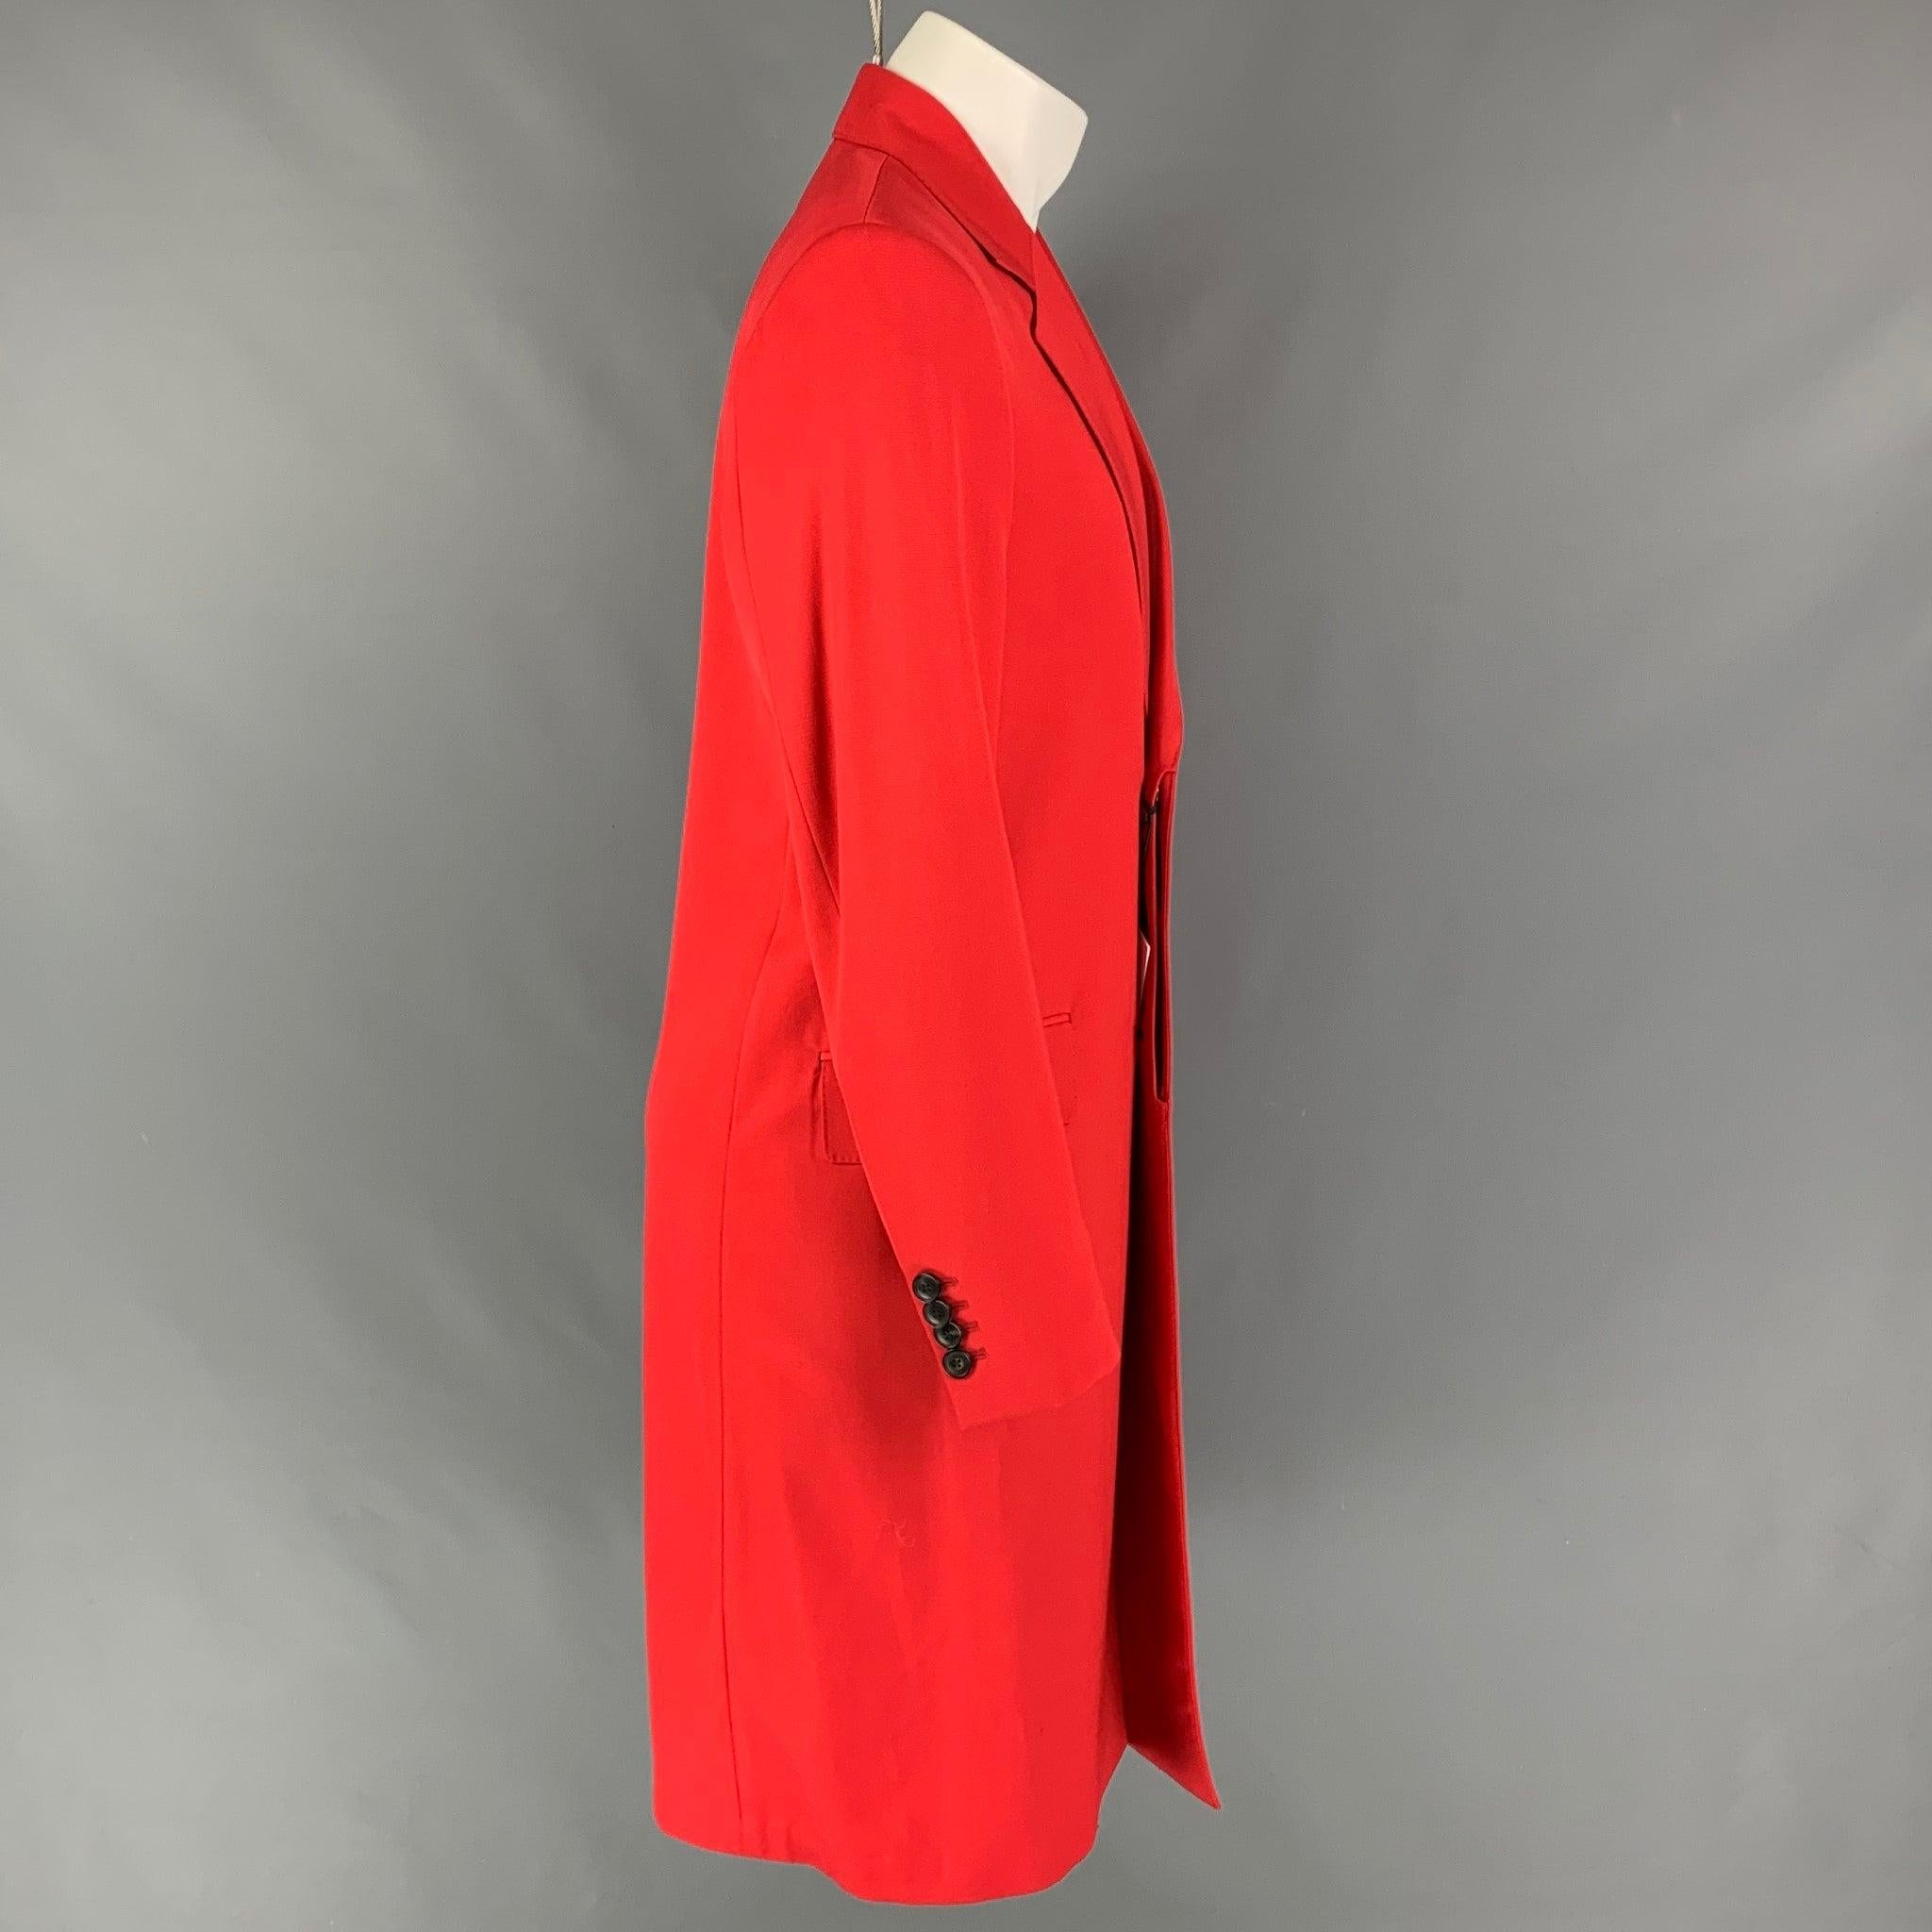 Mantel von PAUL SMITH aus roter Wolle und Polyamid mit geteiltem Revers, Pattentaschen, einem Schlitz hinten und einer verdeckten Knopfleiste. Hergestellt in Italien.
Neu mit Tags.
 

Markiert:  S 

Abmessungen: 
 
Schultern: 17 Zoll Brustumfang: 38